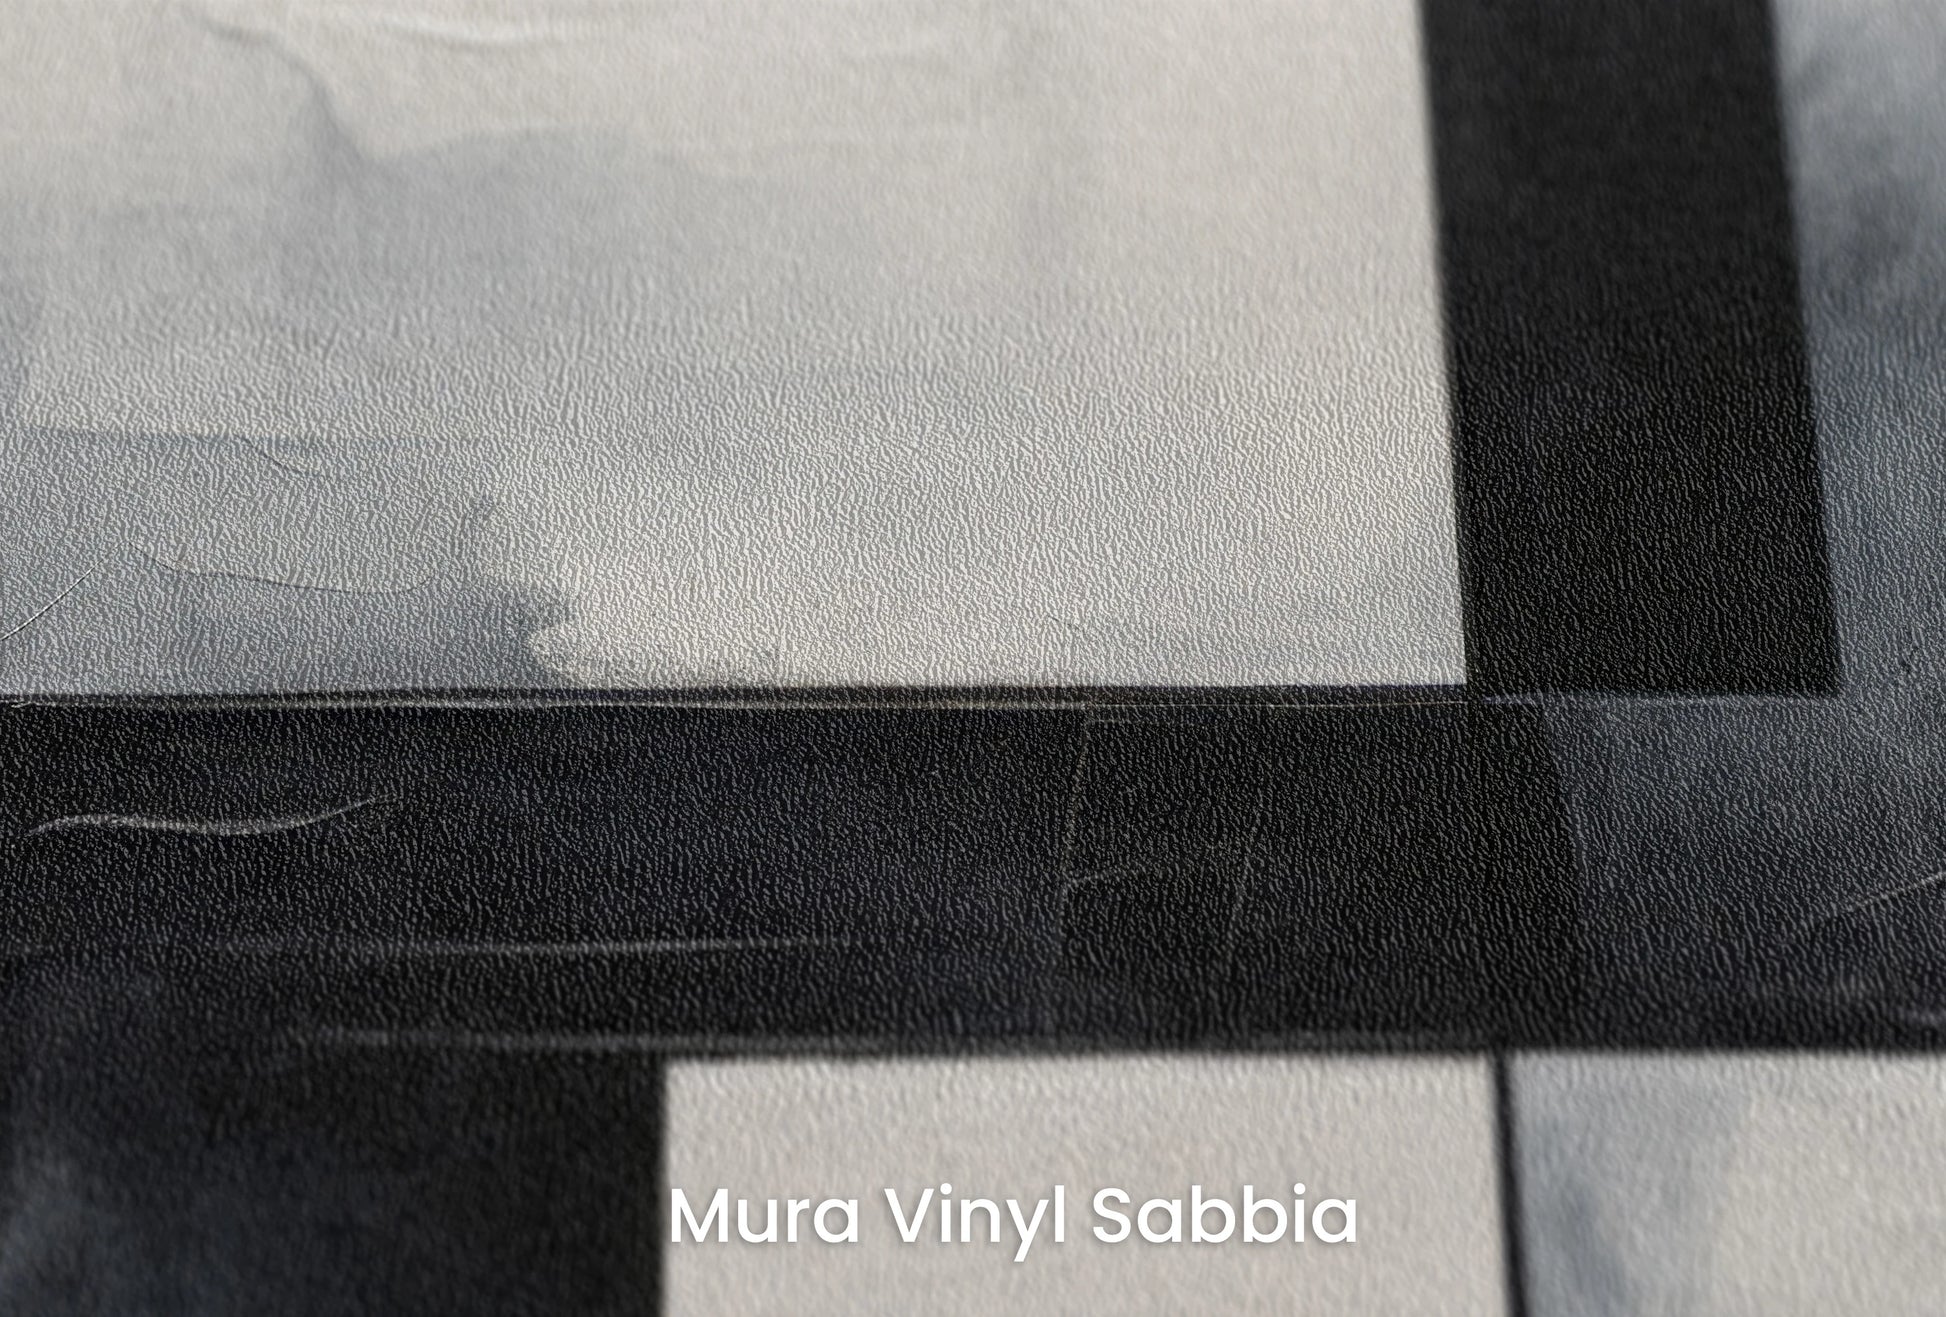 Zbliżenie na artystyczną fototapetę o nazwie Monochrome Slice na podłożu Mura Vinyl Sabbia struktura grubego ziarna piasku.